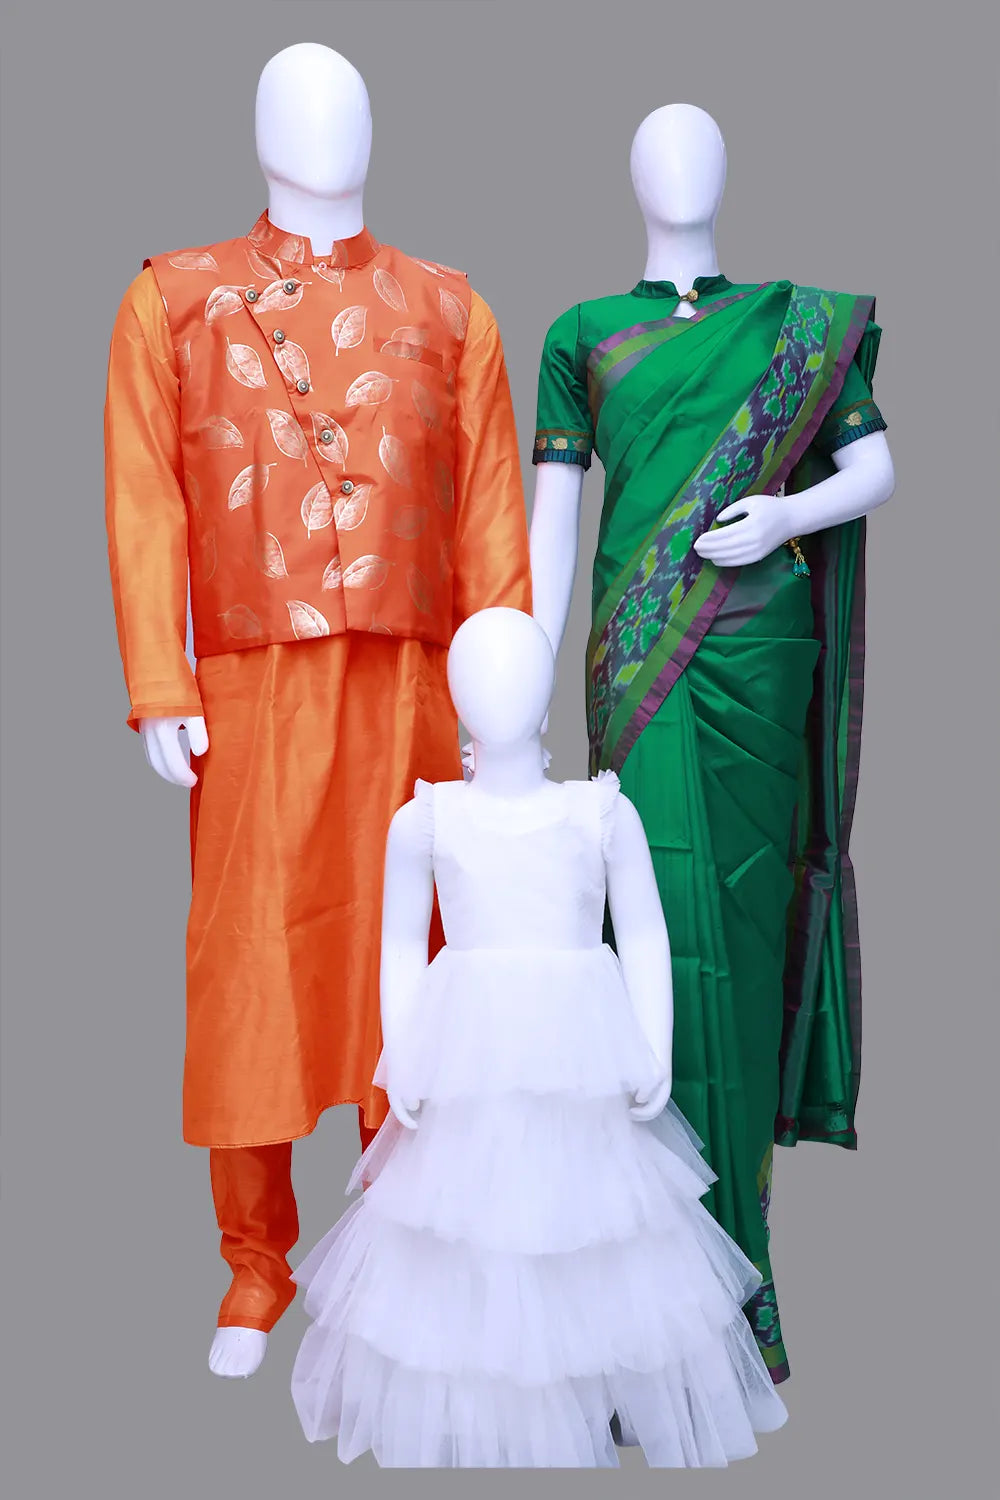 Men's Sherwani,Women's Green Saree and Baby Girl Combo | S3ORANGE